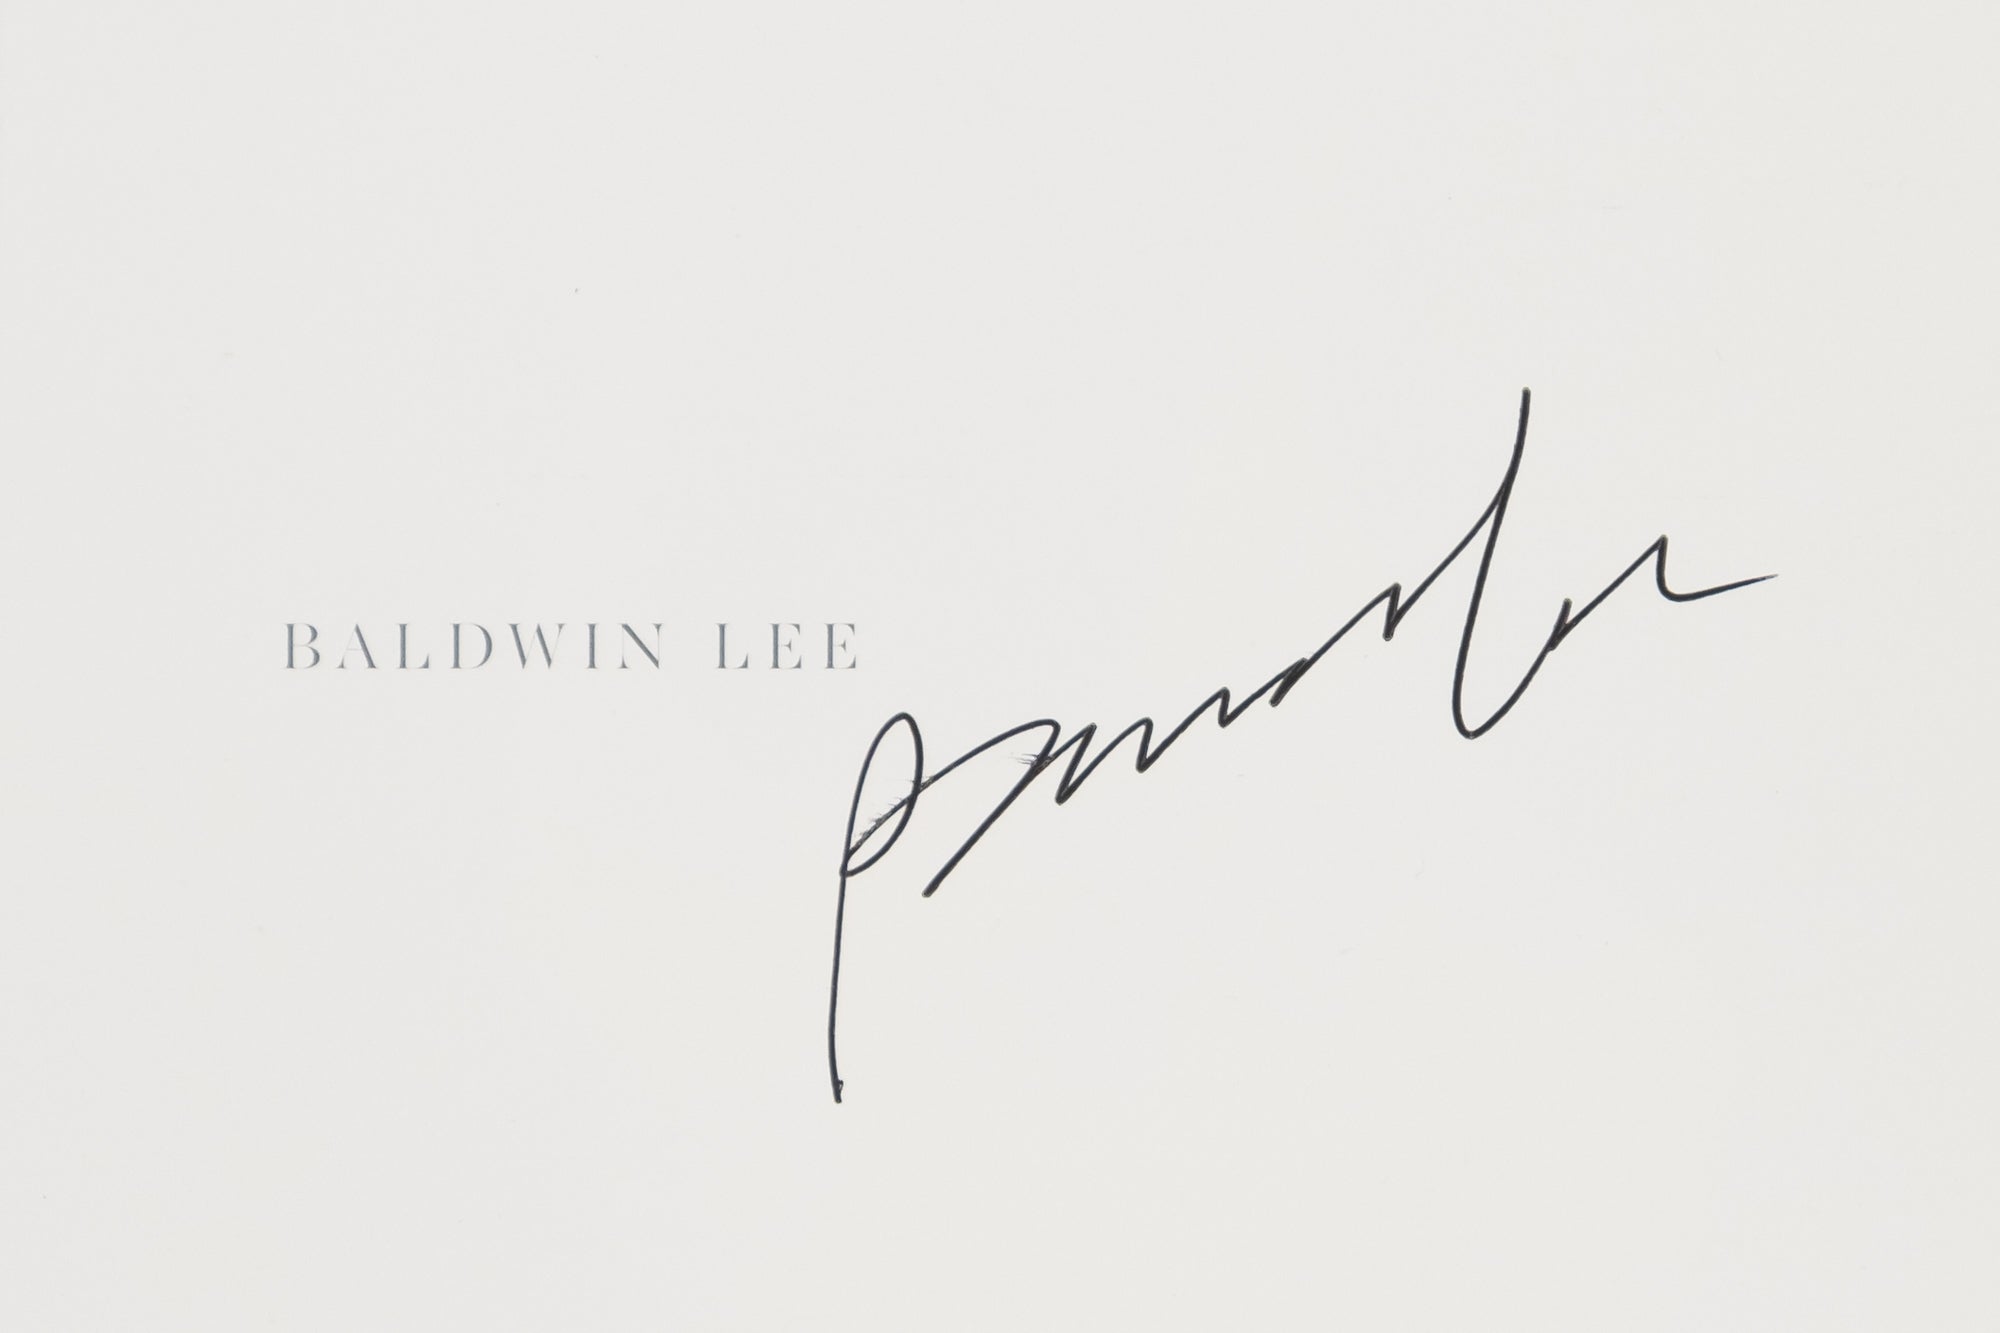 Baldwin Lee — Baldwin Lee